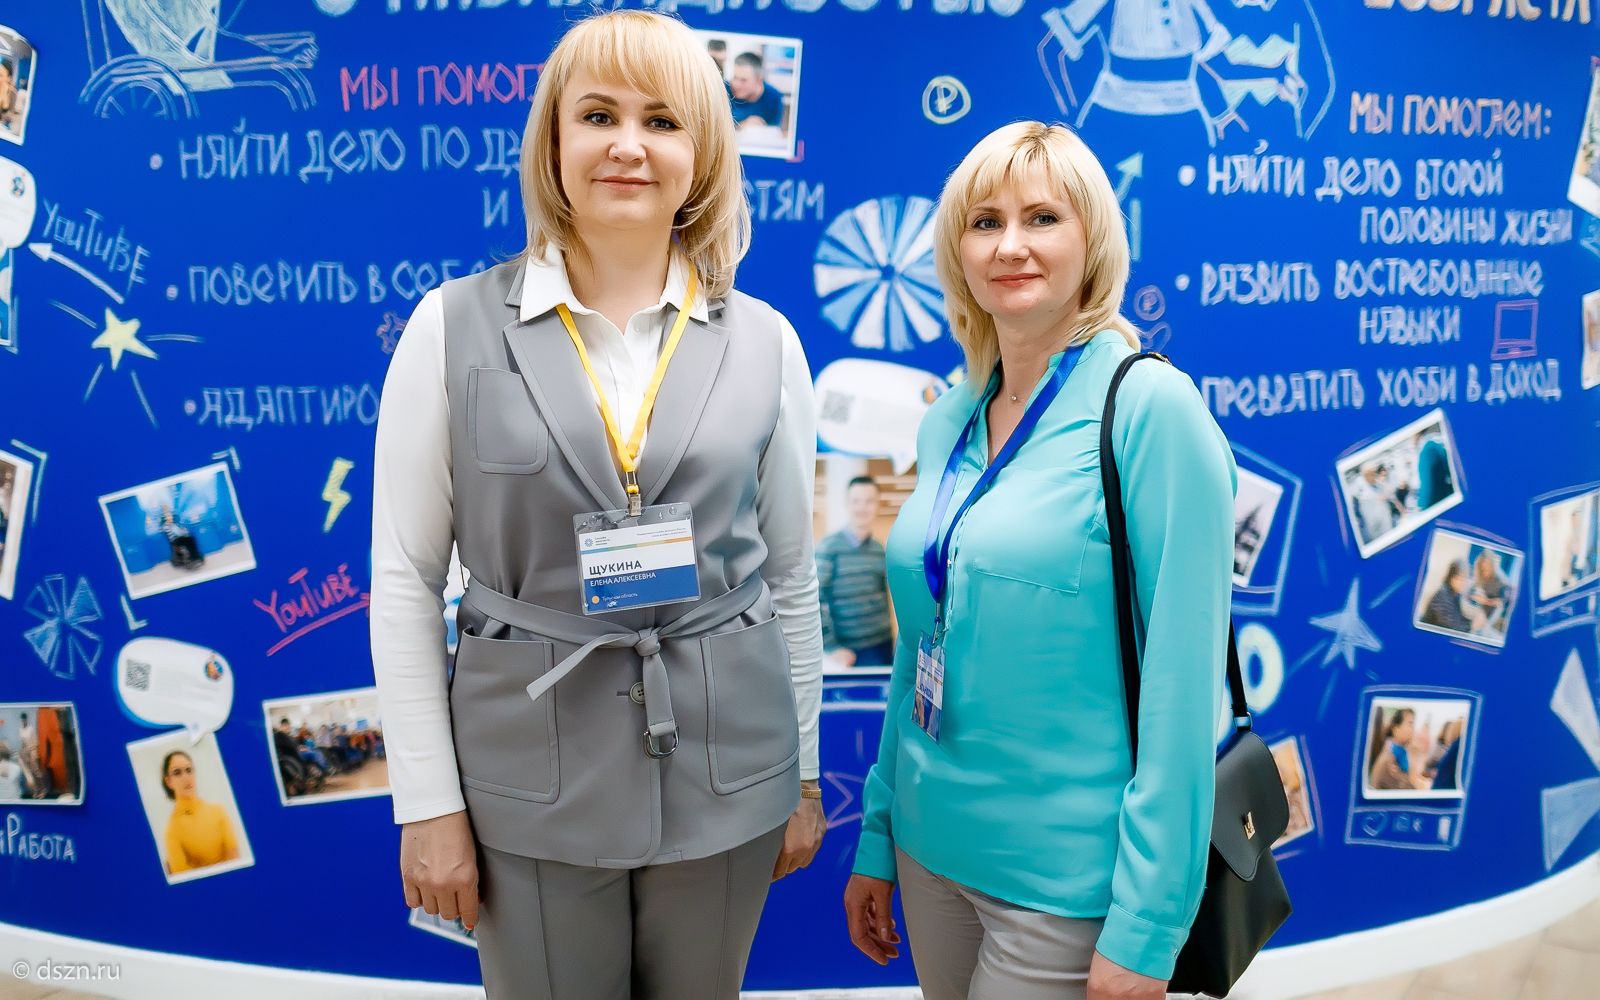 Московские центры занятости приняли гостей из 24 регионов России: репортаж из флагманских центров занятости